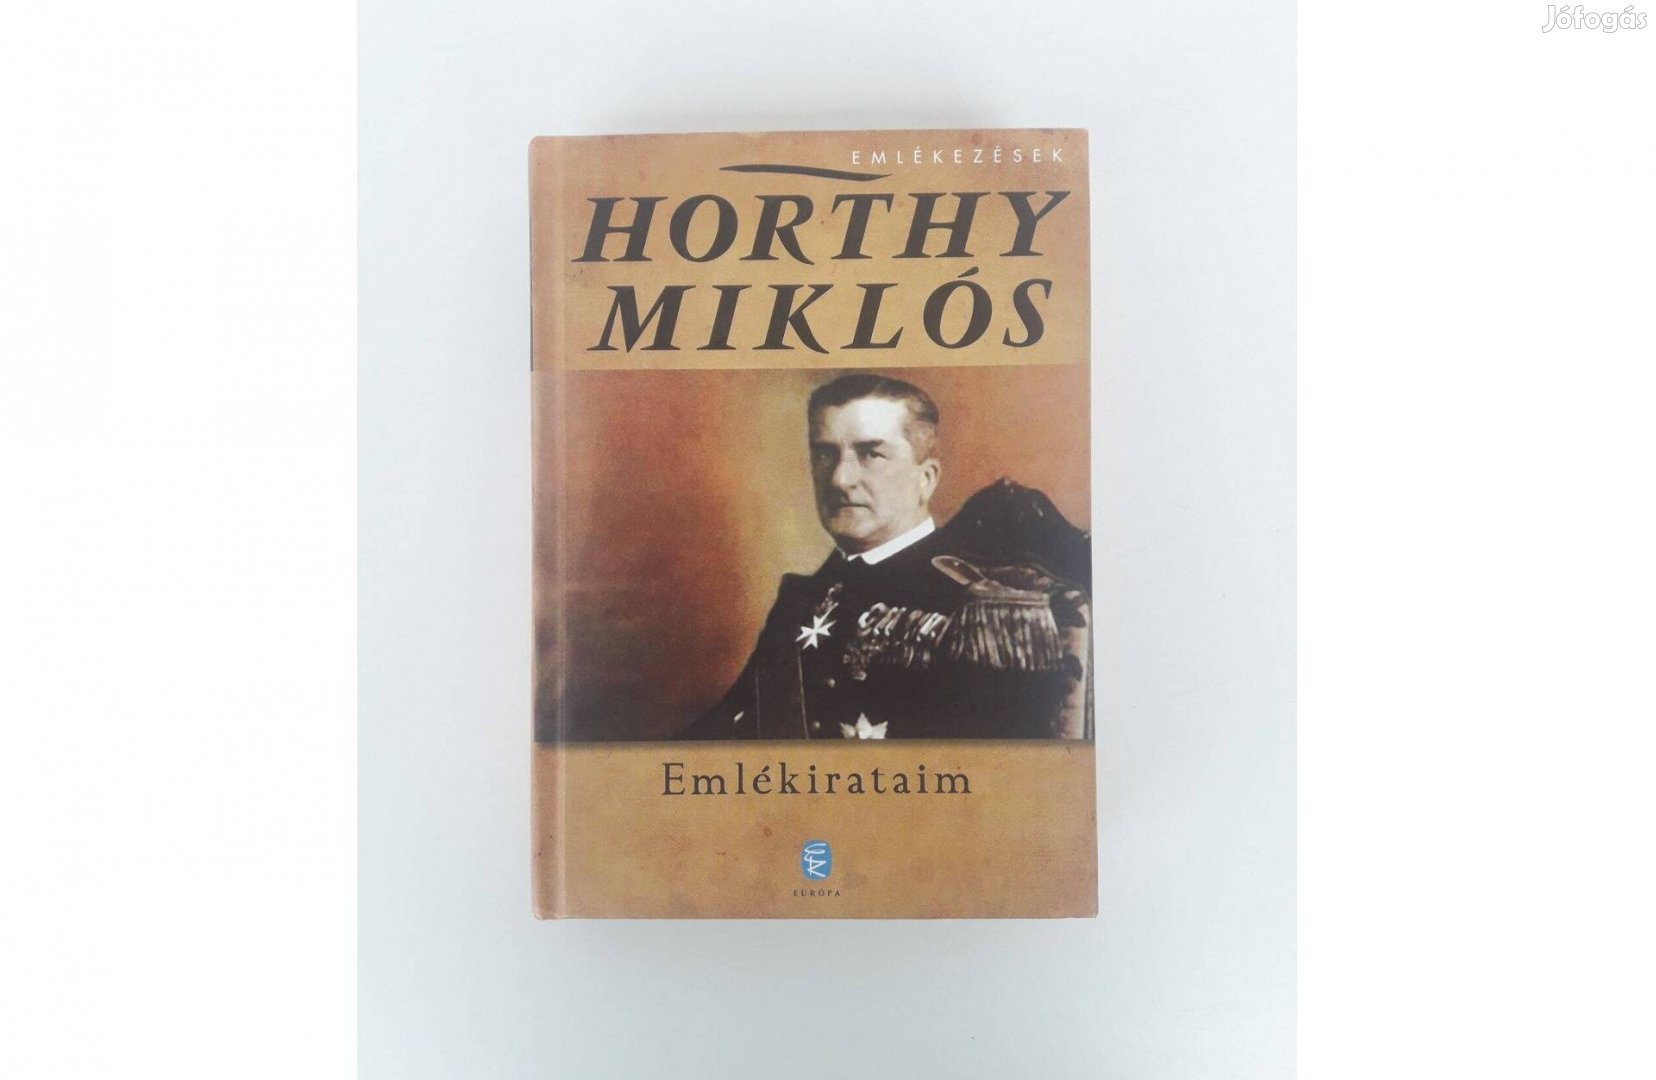 Horthy Miklós: Emlékirataim könyv szép állapotban eladó